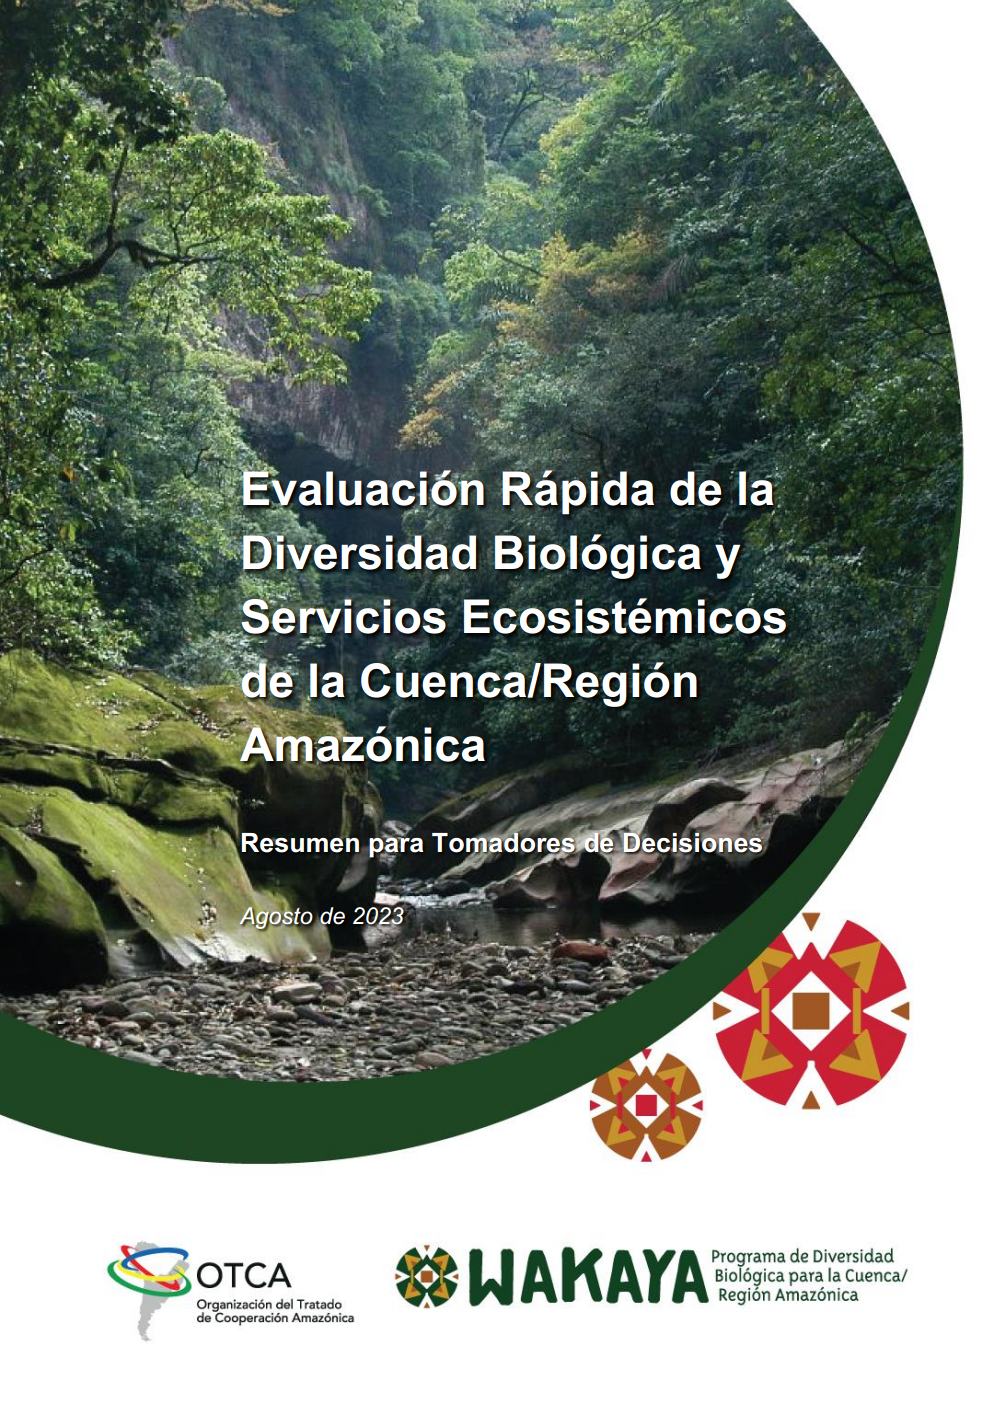 Evaluación Rápida de Diversidad Biológica y Servicios Ecosistemicos de la Cuenca/Región Amazónica